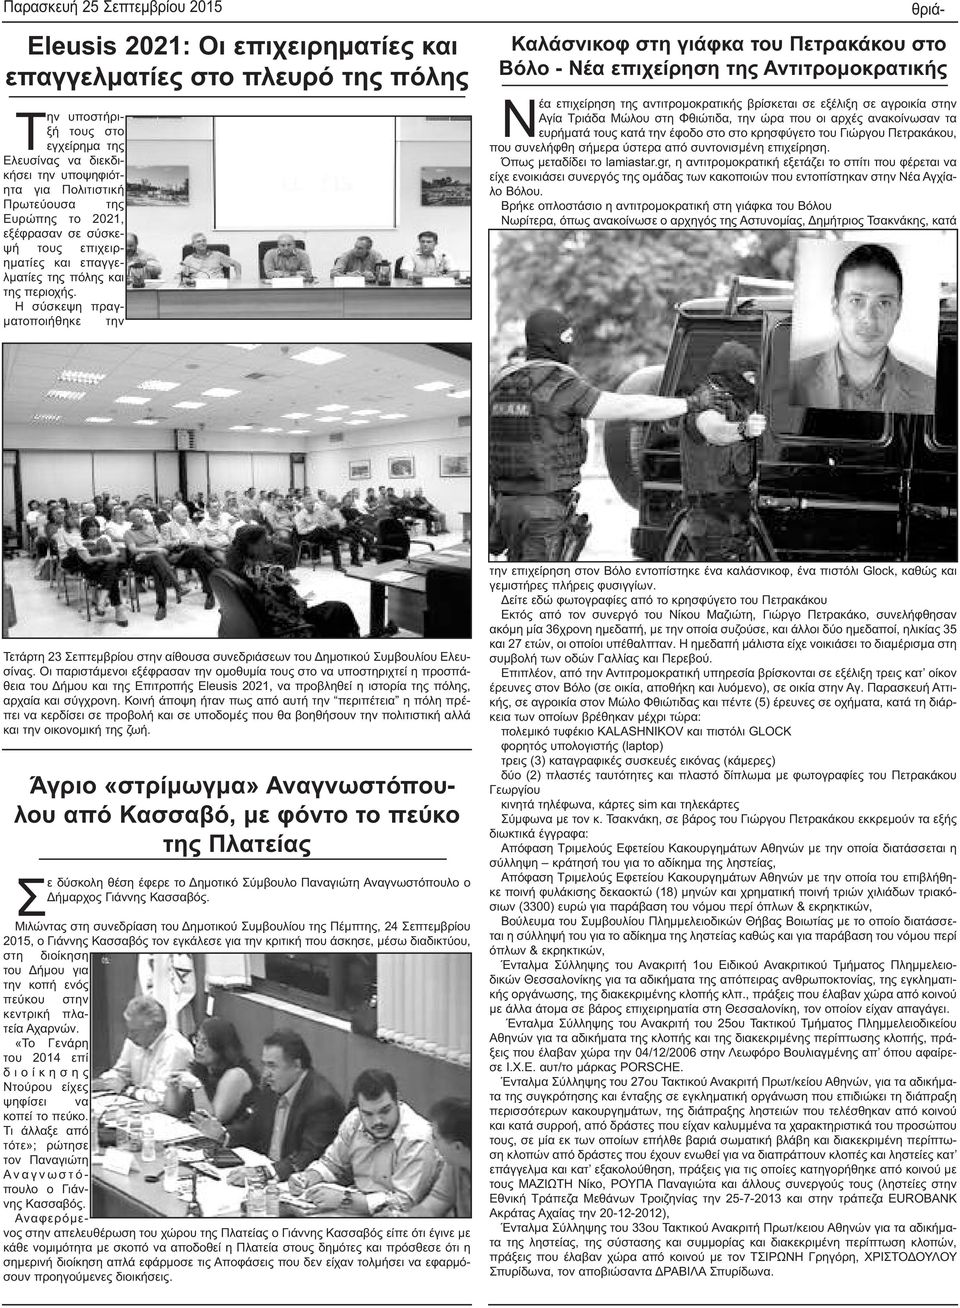 Η σύσκεψη πραγματοποιήθηκε την θριά- Καλάσνικοφ στη γιάφκα του Πετρακάκου στο Βόλο - Νέα επιχείρηση της Αντιτρομοκρατικής Νέα επιχείρηση της αντιτρομοκρατικής βρίσκεται σε εξέλιξη σε αγροικία στην